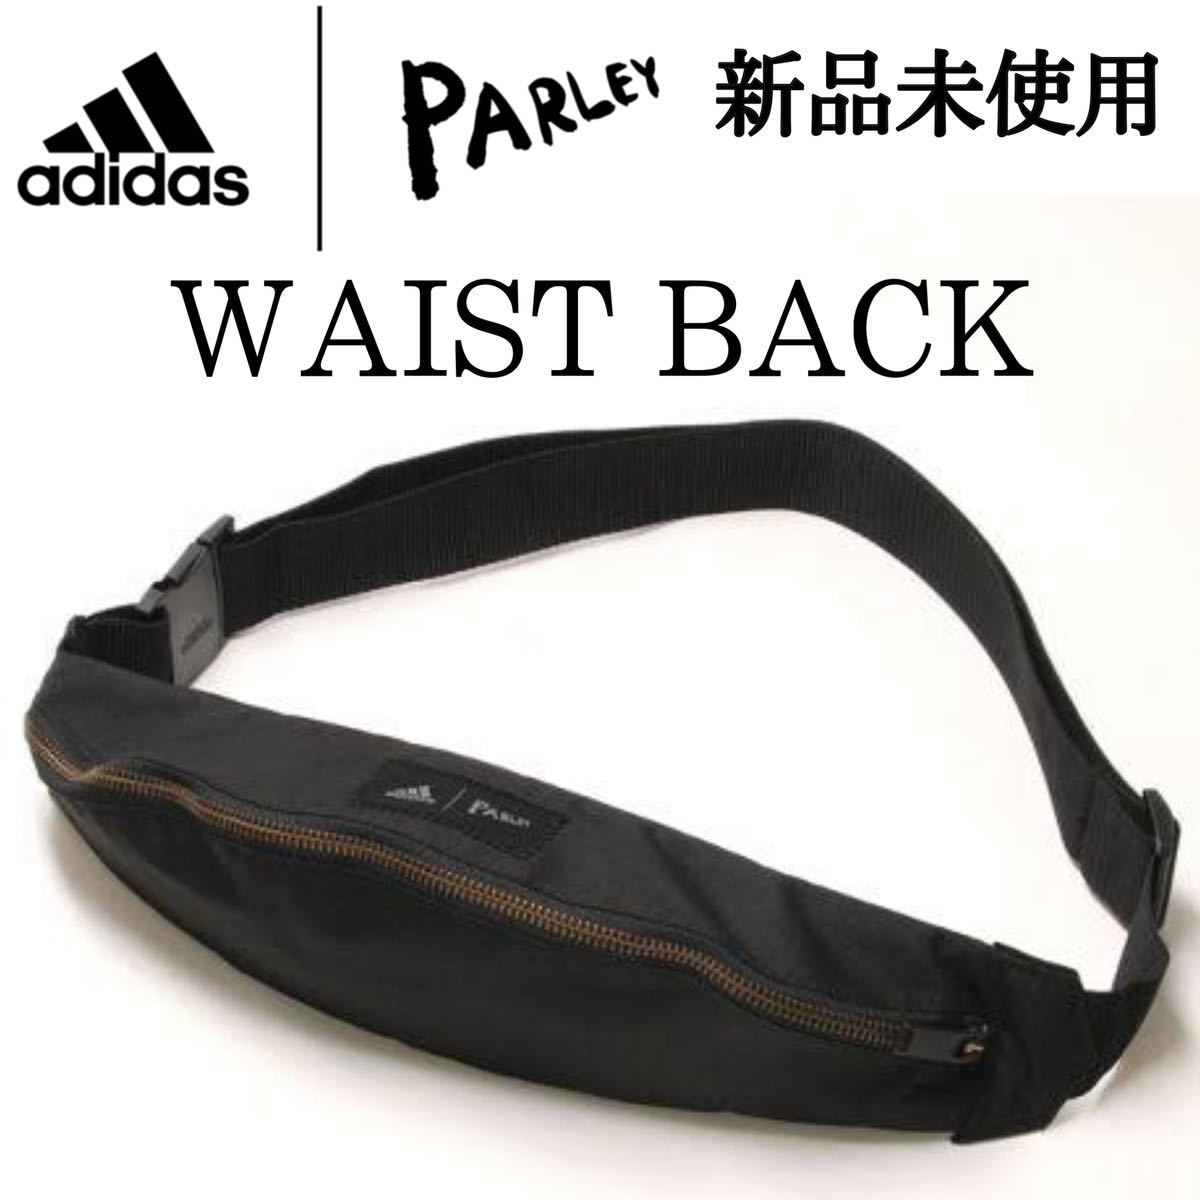  new goods Adidas pa- Ray waist bag collaboration black complete sale goods body bag belt bag shoulder bag adidas Parley WASTE BACK adjustment 